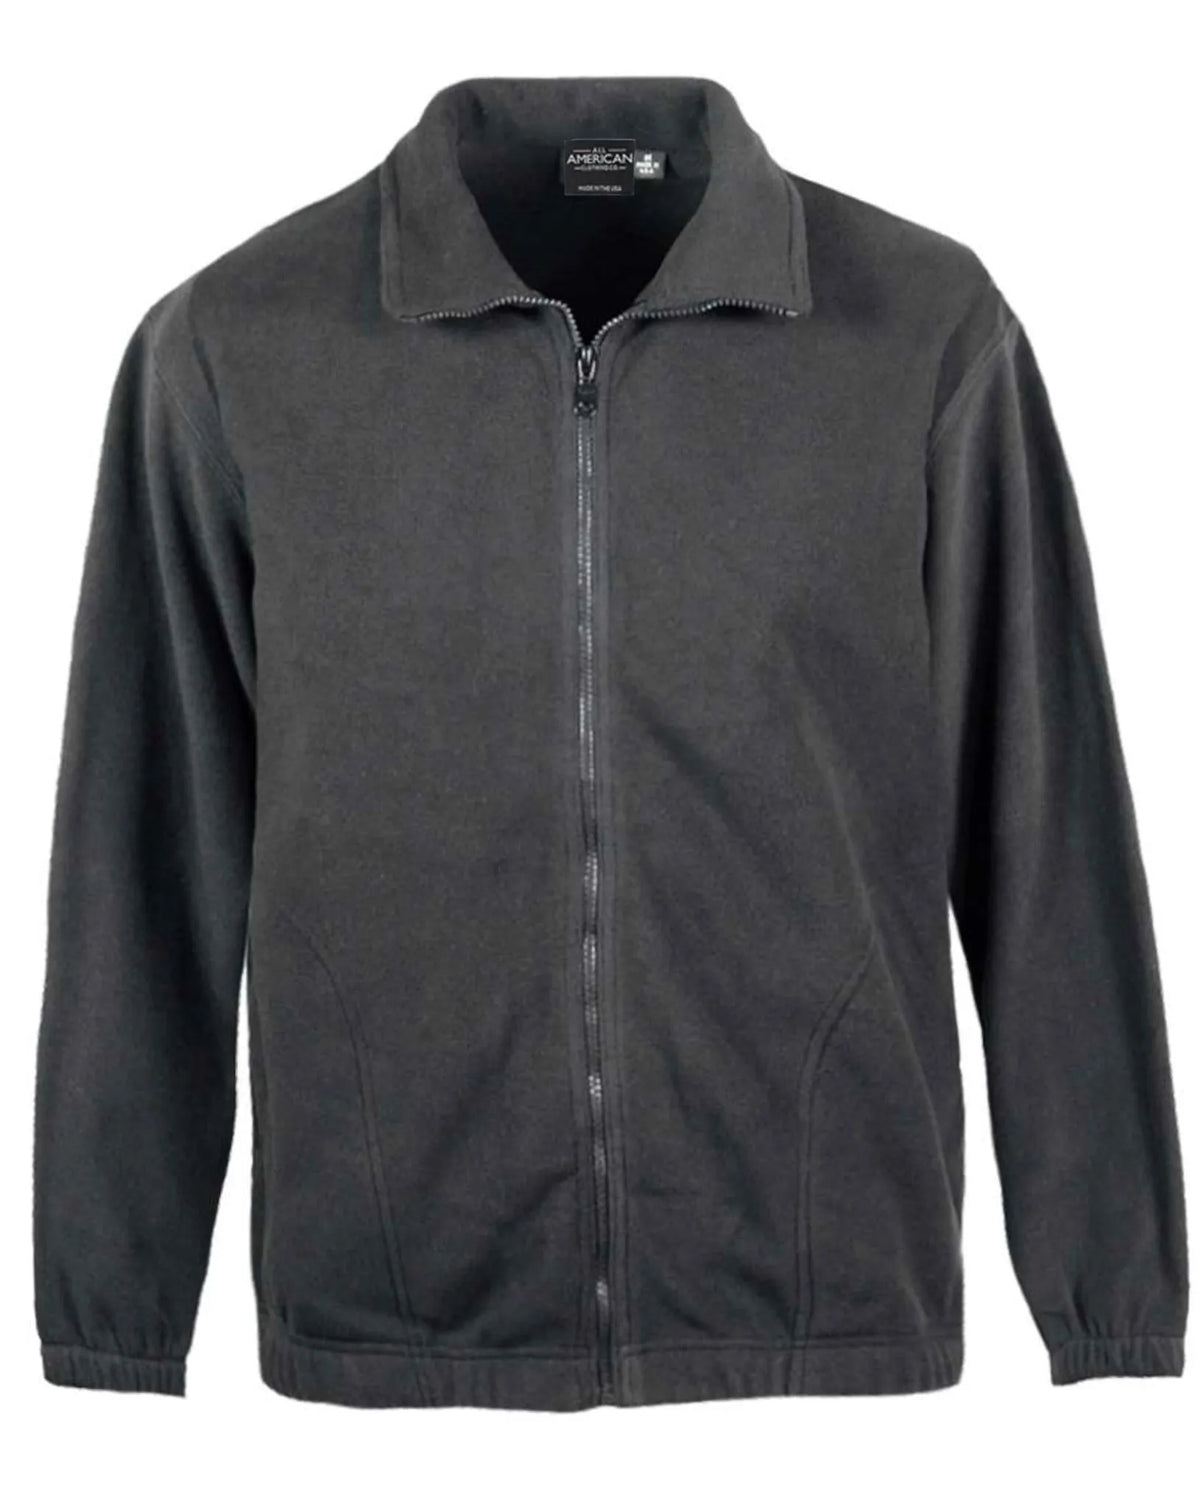 Men's Full Zip Fleece Jacket - All American Clothing Co